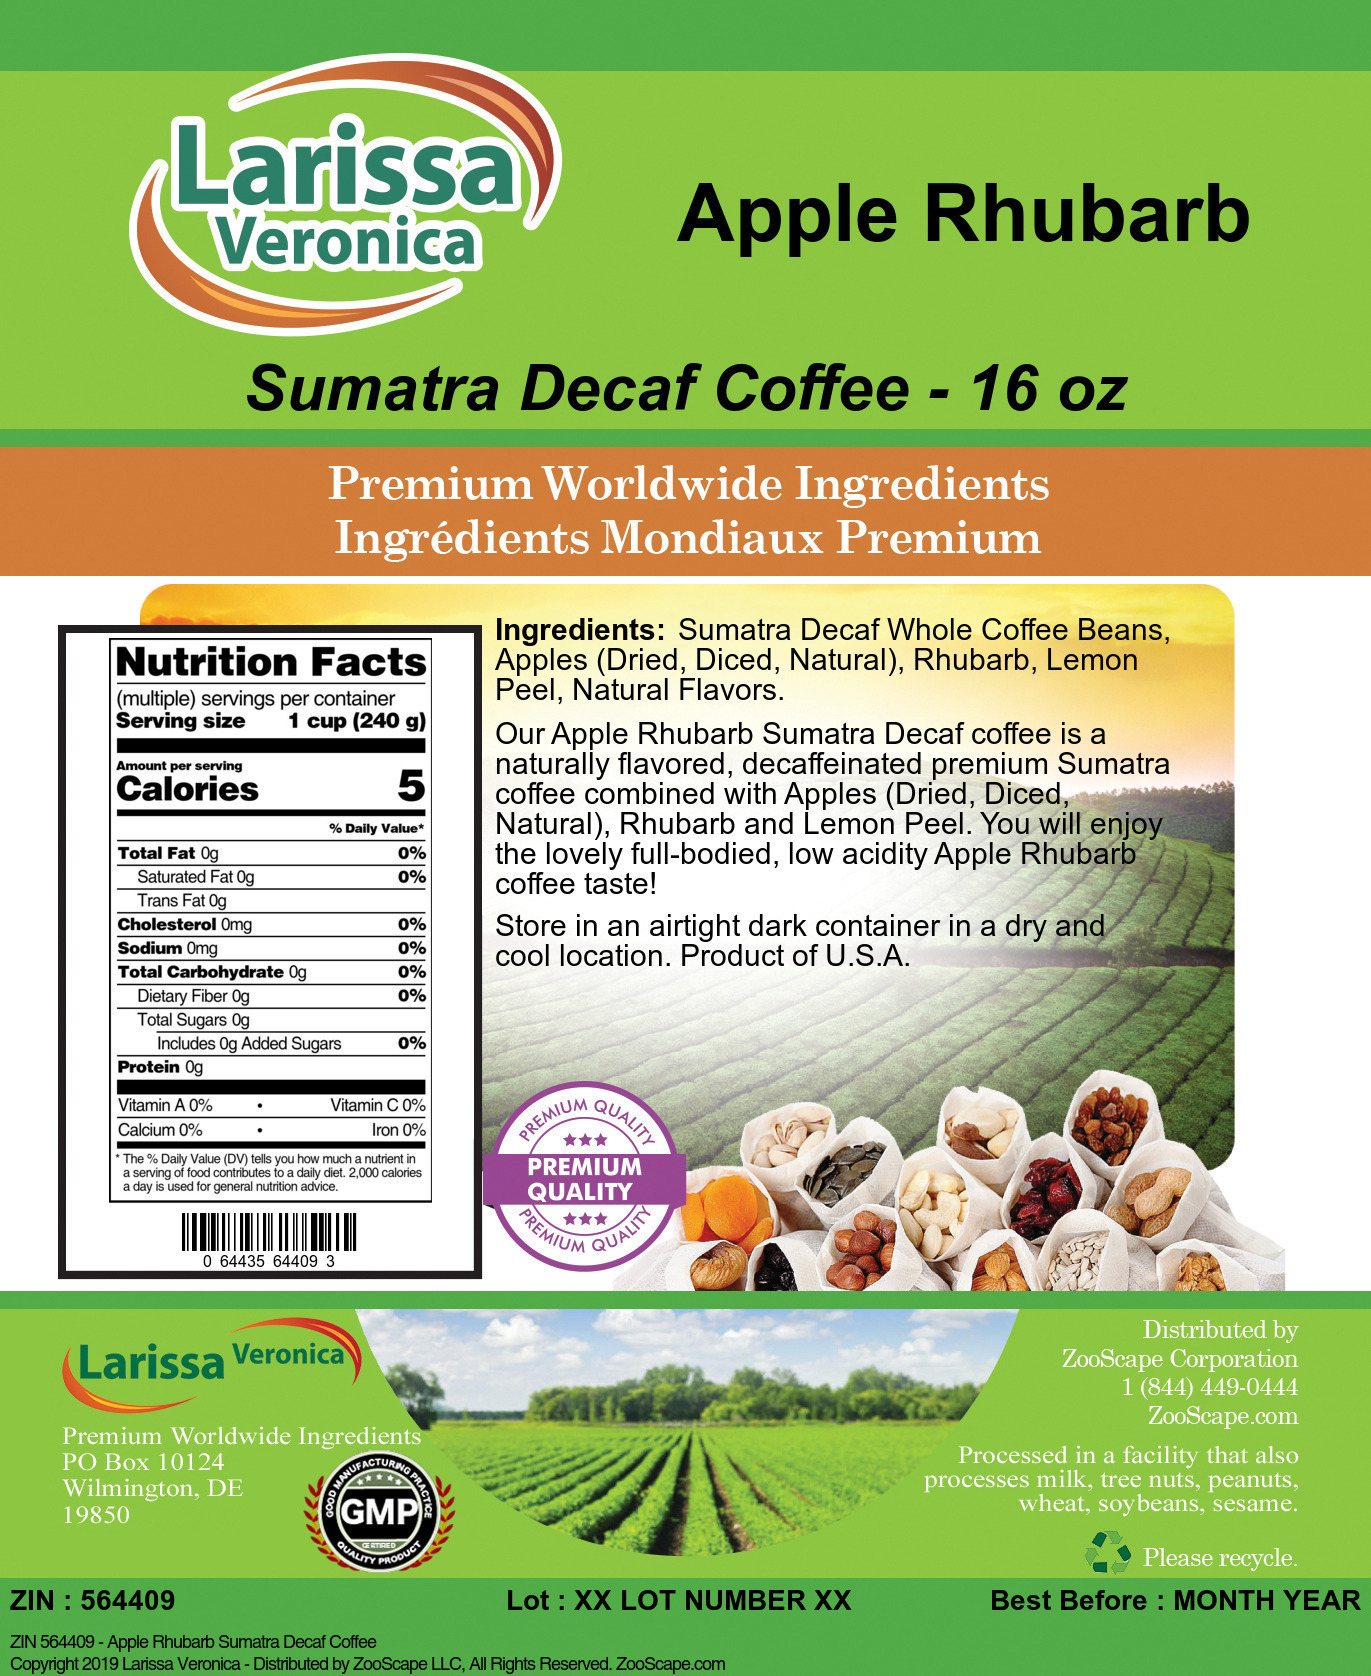 Apple Rhubarb Sumatra Decaf Coffee - Label